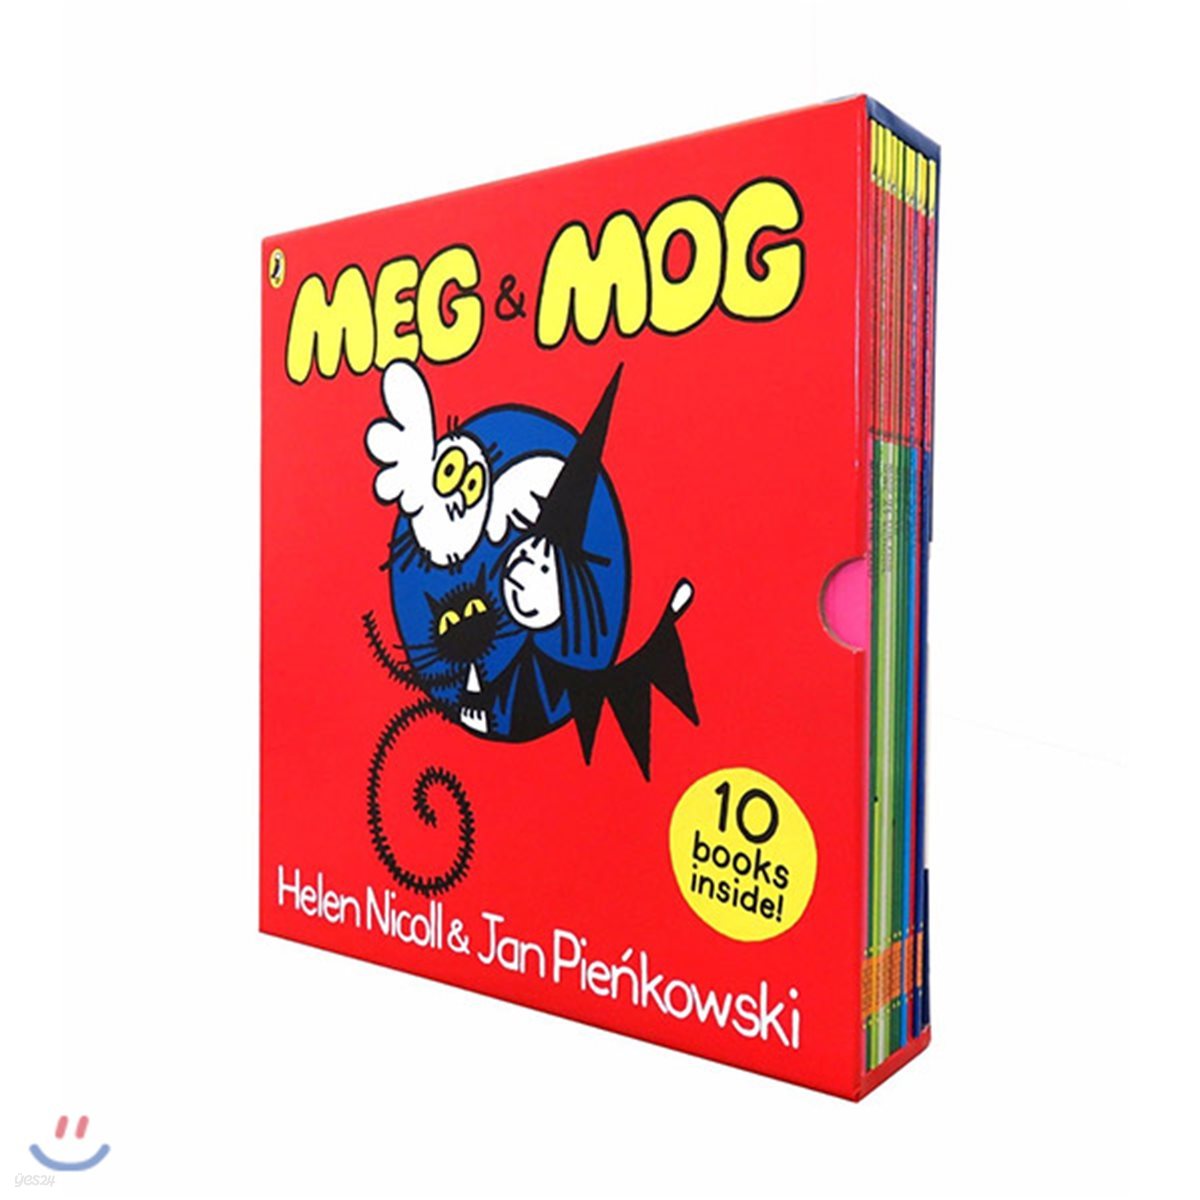 메그와 모그 원서 그림책 10권 세트 (영국판) : Meg &amp; Mog Picture Book Box Set